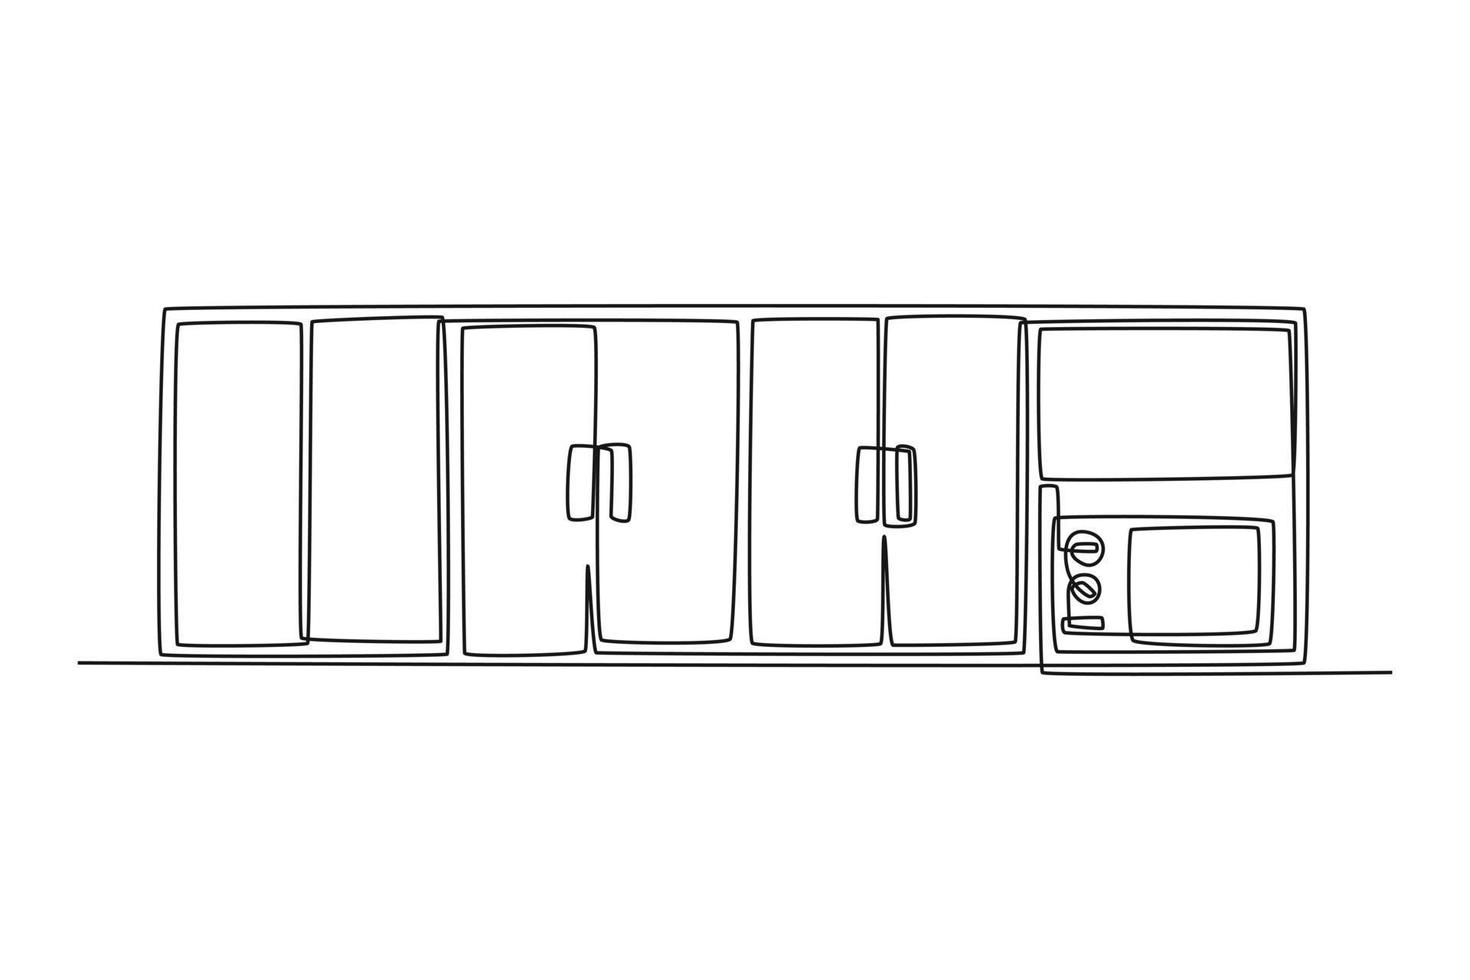 single een lijn tekening keuken kabinet voor opslaan gerechten en bril. keuken kamer concept doorlopend lijn trek ontwerp grafisch vector illustratie